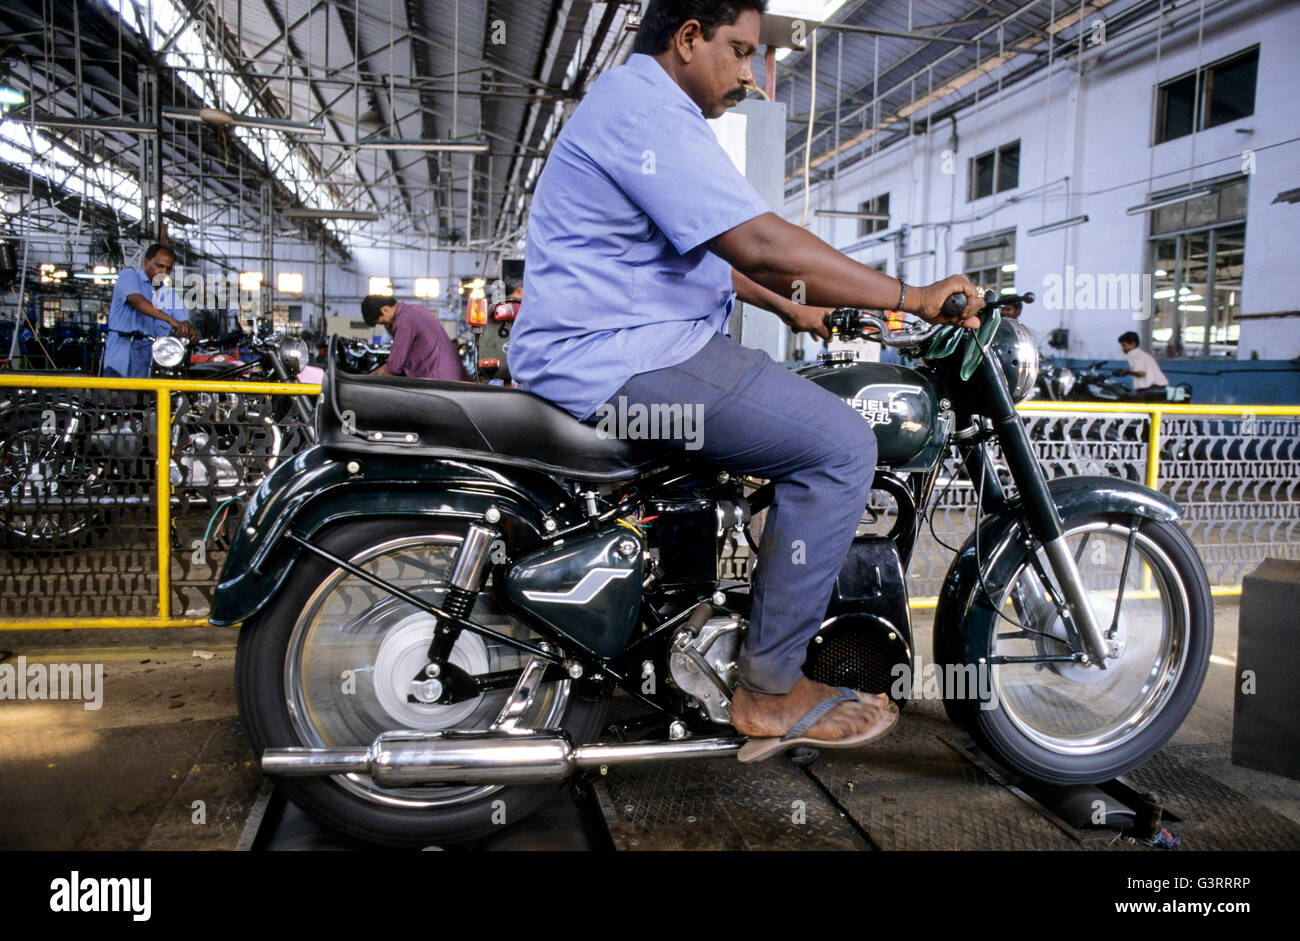 INDIA, nello Stato del Tamil Nadu, città Chennai ex Madras, la fabbrica Royal Enfield , Produzione di moto Enfield Bullet 500 , la prova e il controllo di qualità di Enfield con motore diesel alla fine della linea di assemblaggio Foto Stock